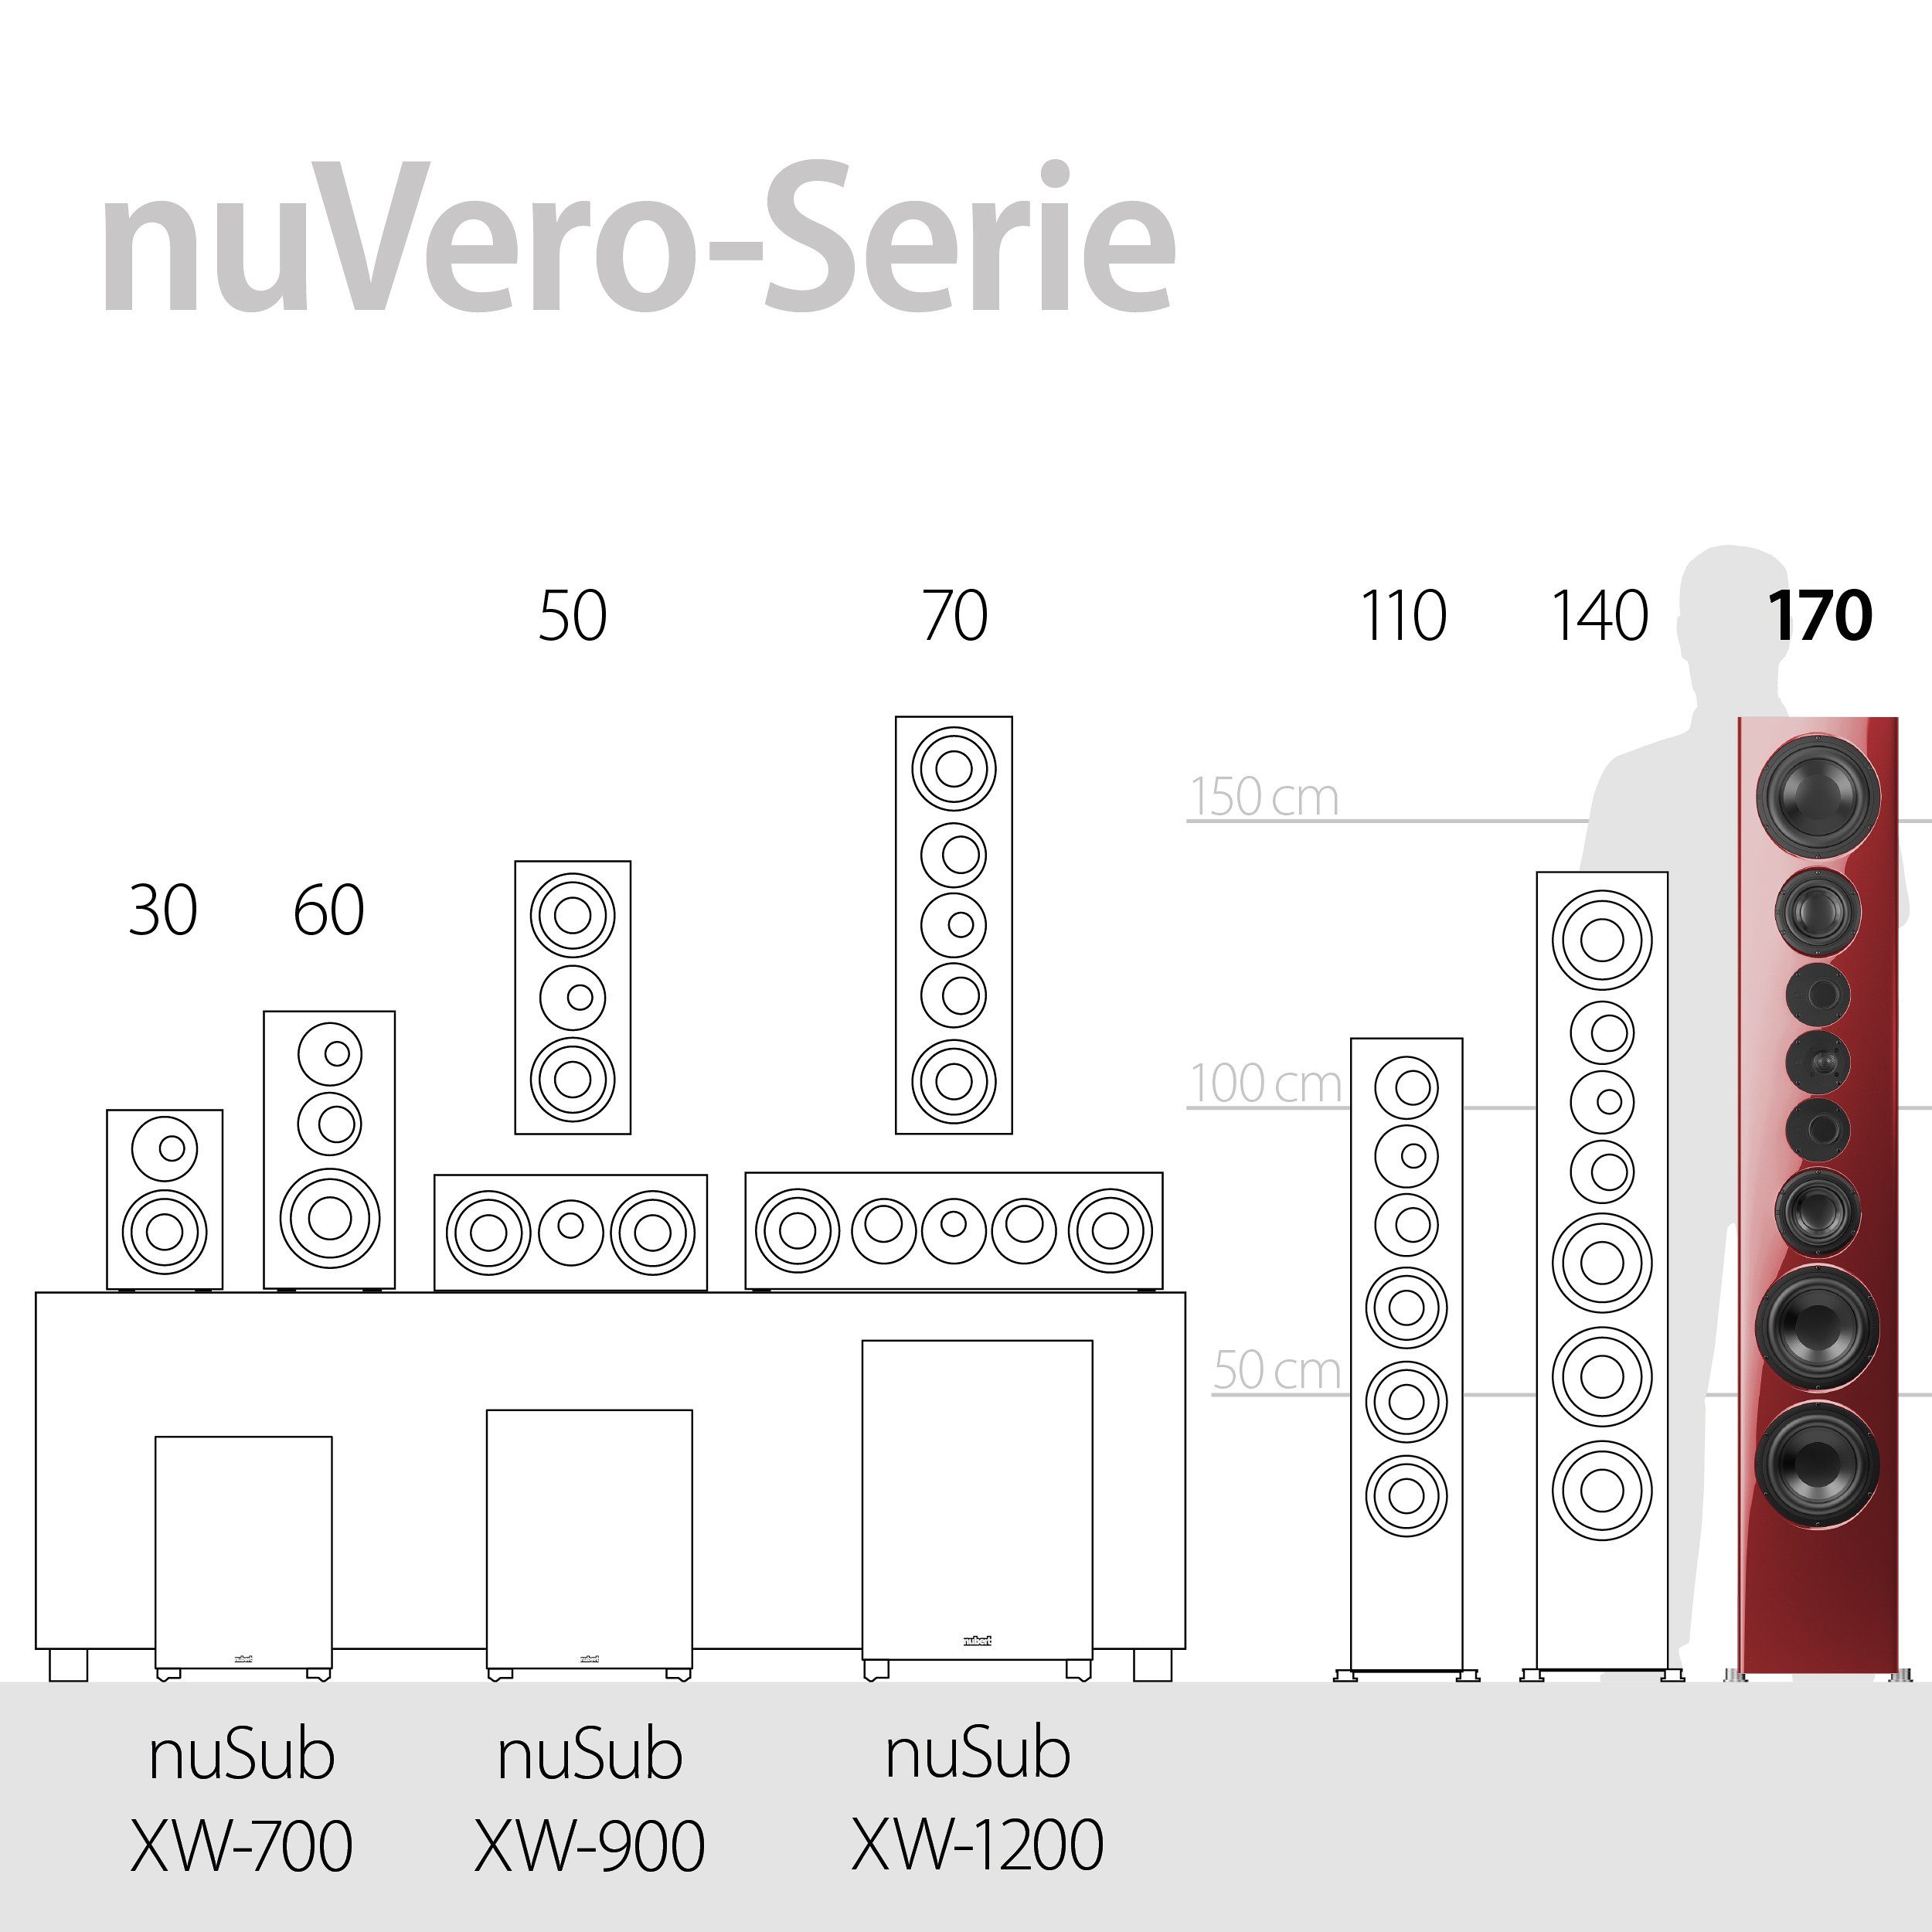 170 (650 nuVero W) Nubert Stand-Lautsprecher Rubinrot